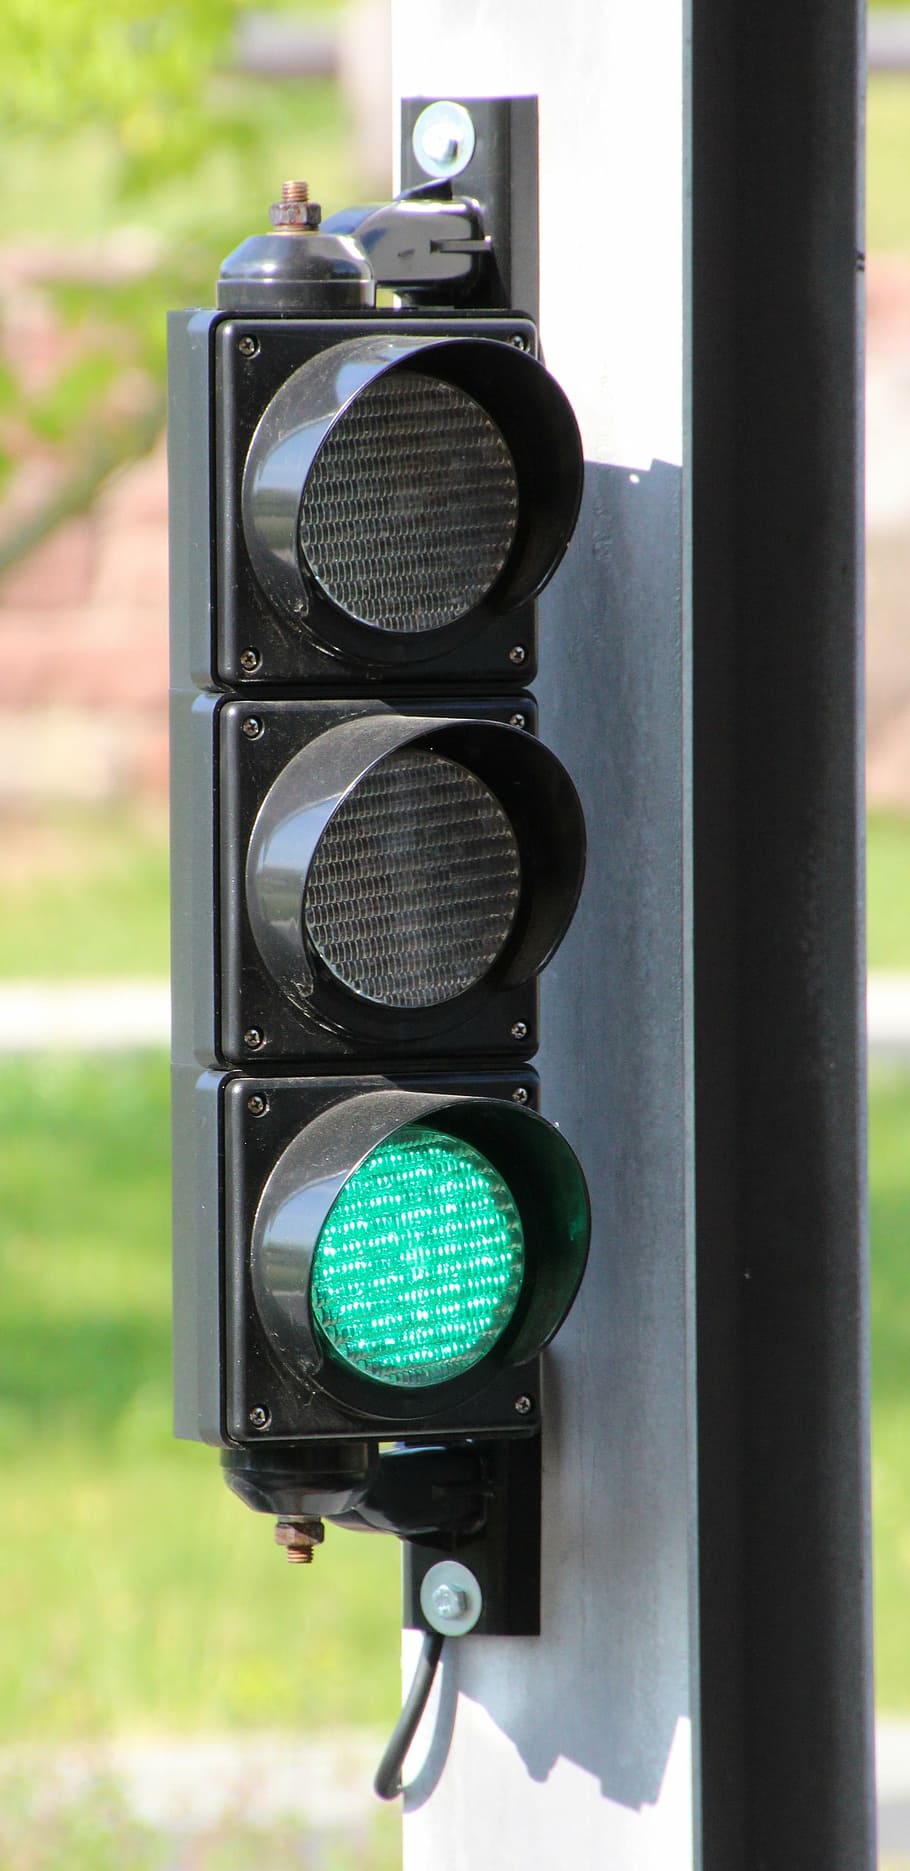 semáforos, verde, señal luminosa, señal de tráfico, luz verde, luz de freno, luz, foco en primer plano, color verde, día